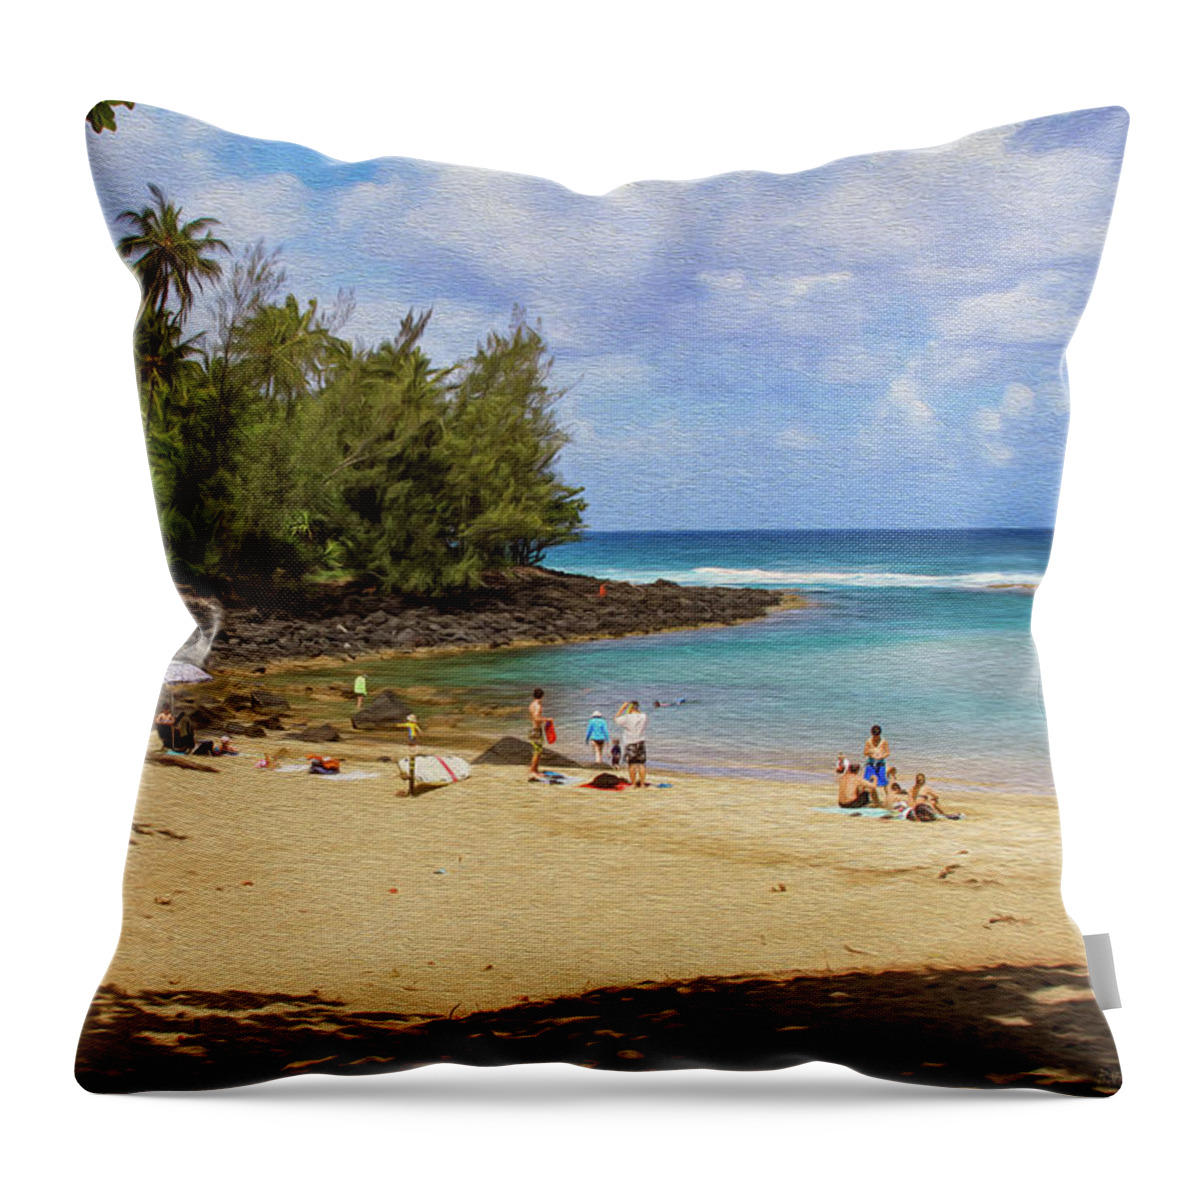 Bonnie Follett Throw Pillow featuring the photograph A Day at Ke'e Beach by Bonnie Follett